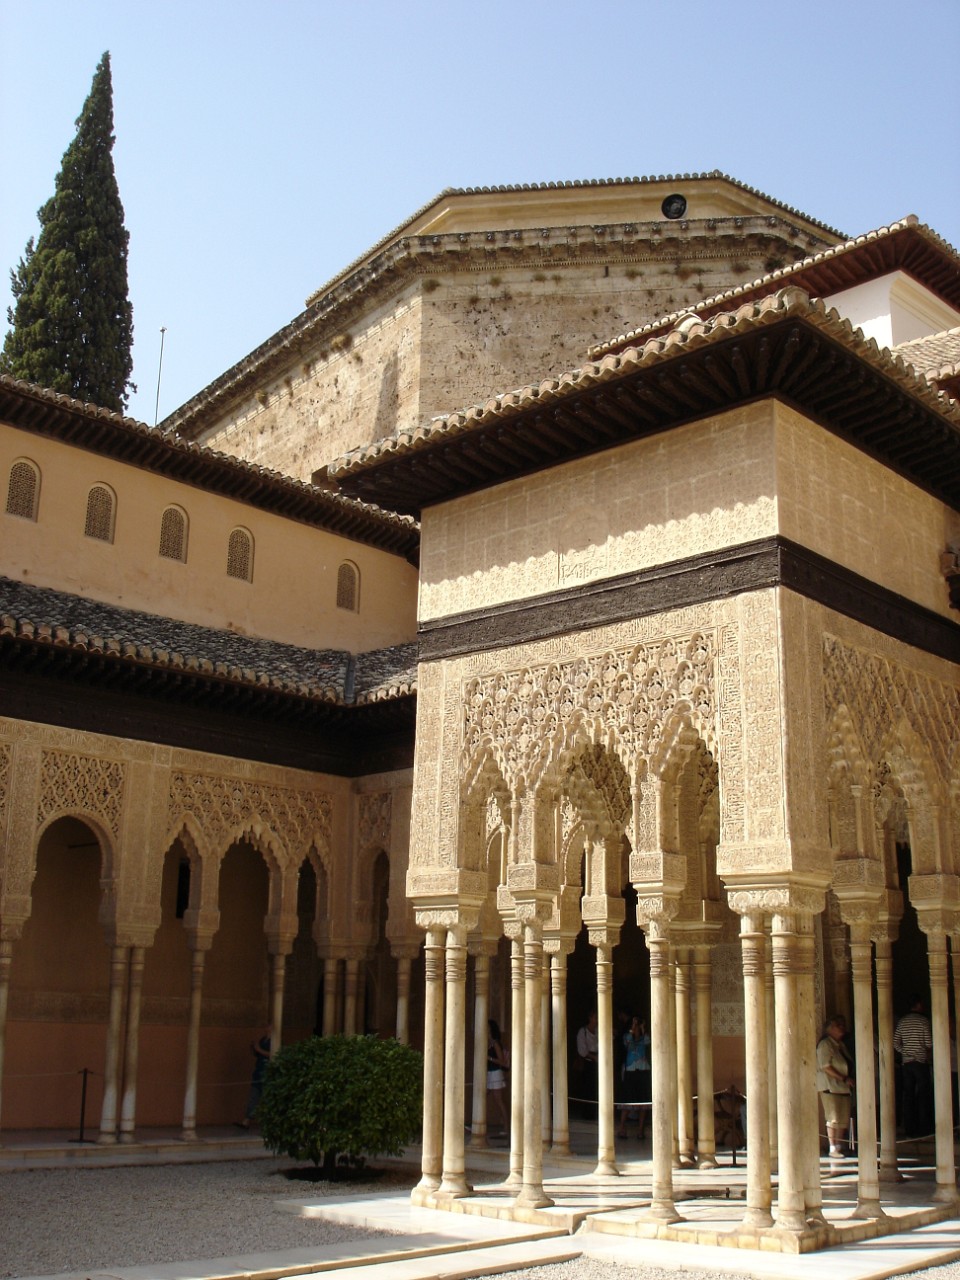 Patio de los Leones in the Nazrid palace